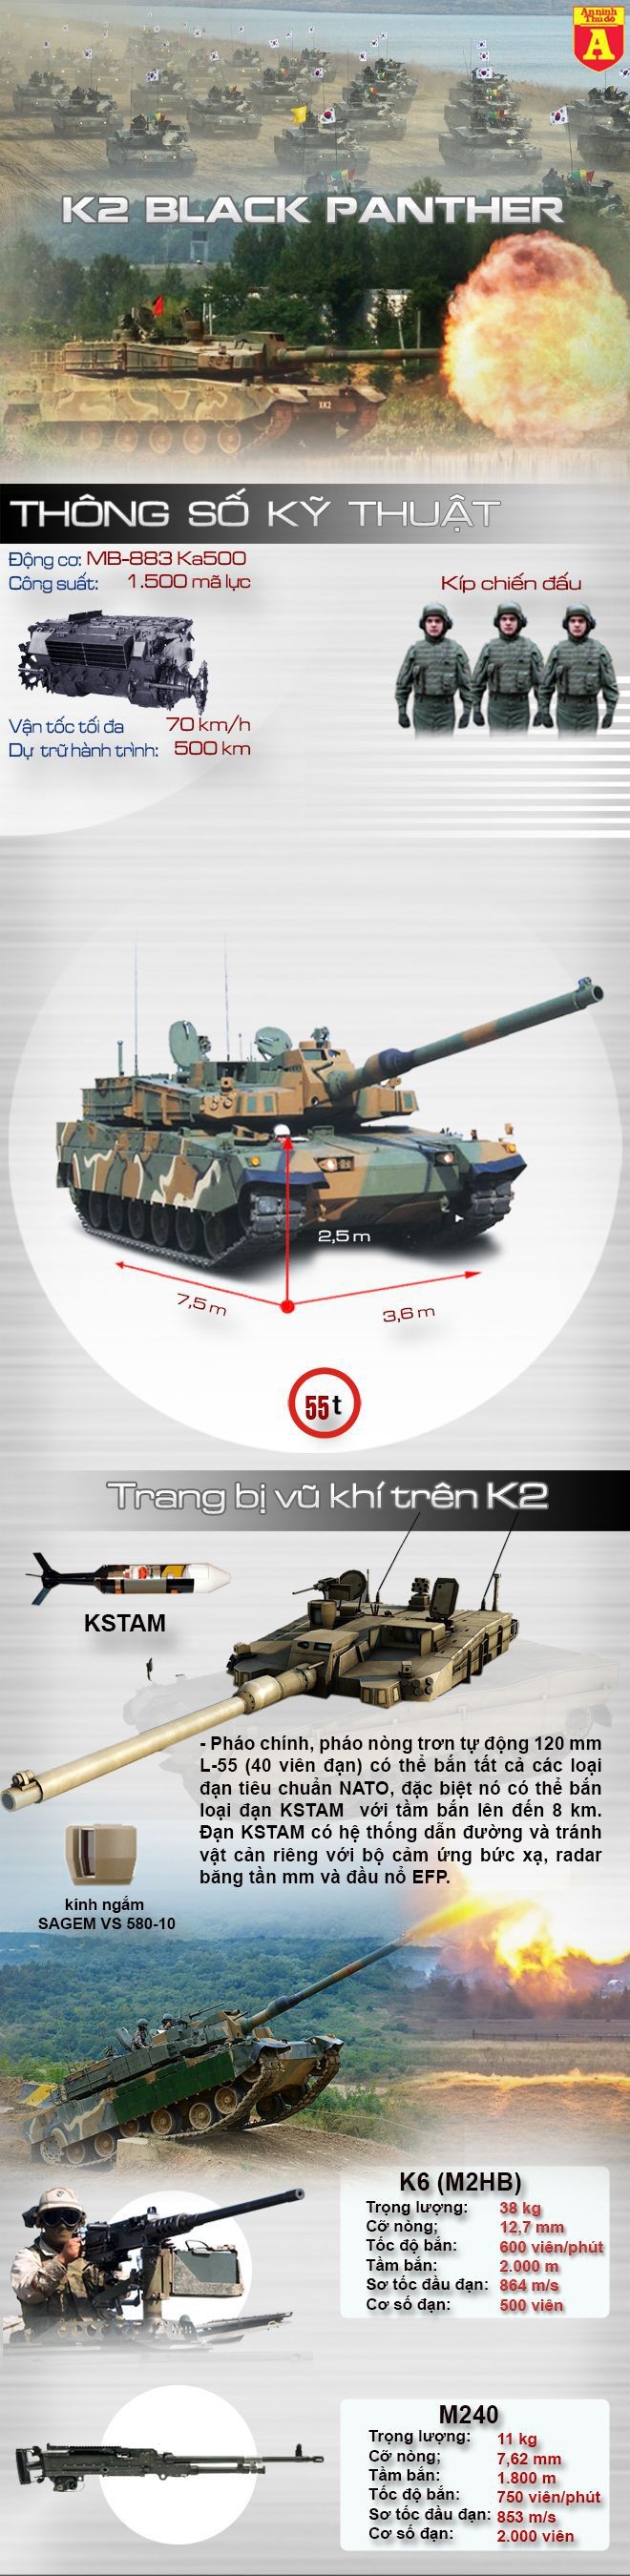 [Infographic] K2 Black Panther – Siêu tăng đắt giá của Hàn Quốc để răn đe Triều Tiên ảnh 1